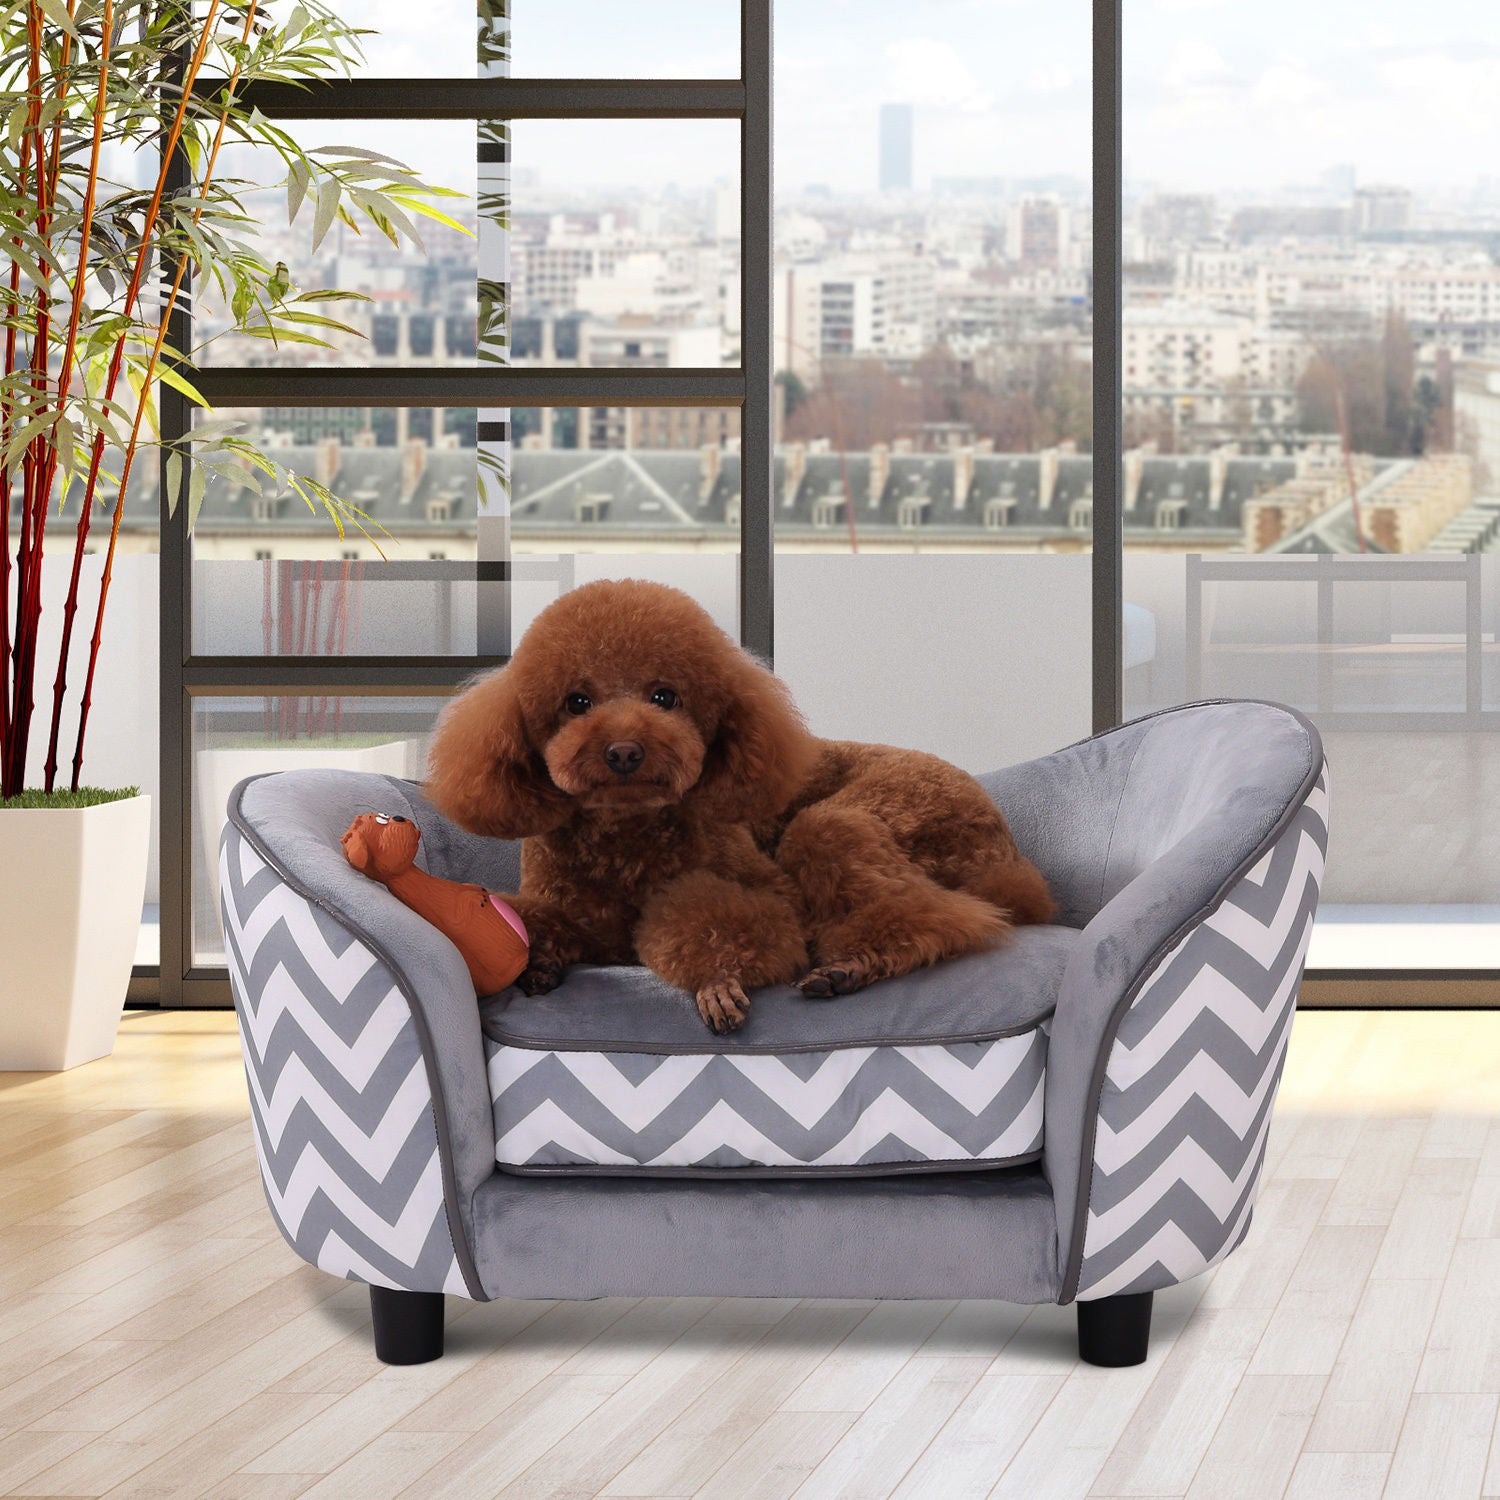 Canapé pour chien Nancy's El Secreto Pet - lit pour chien - tapis pour chien - panier pour chien lavable rembourré